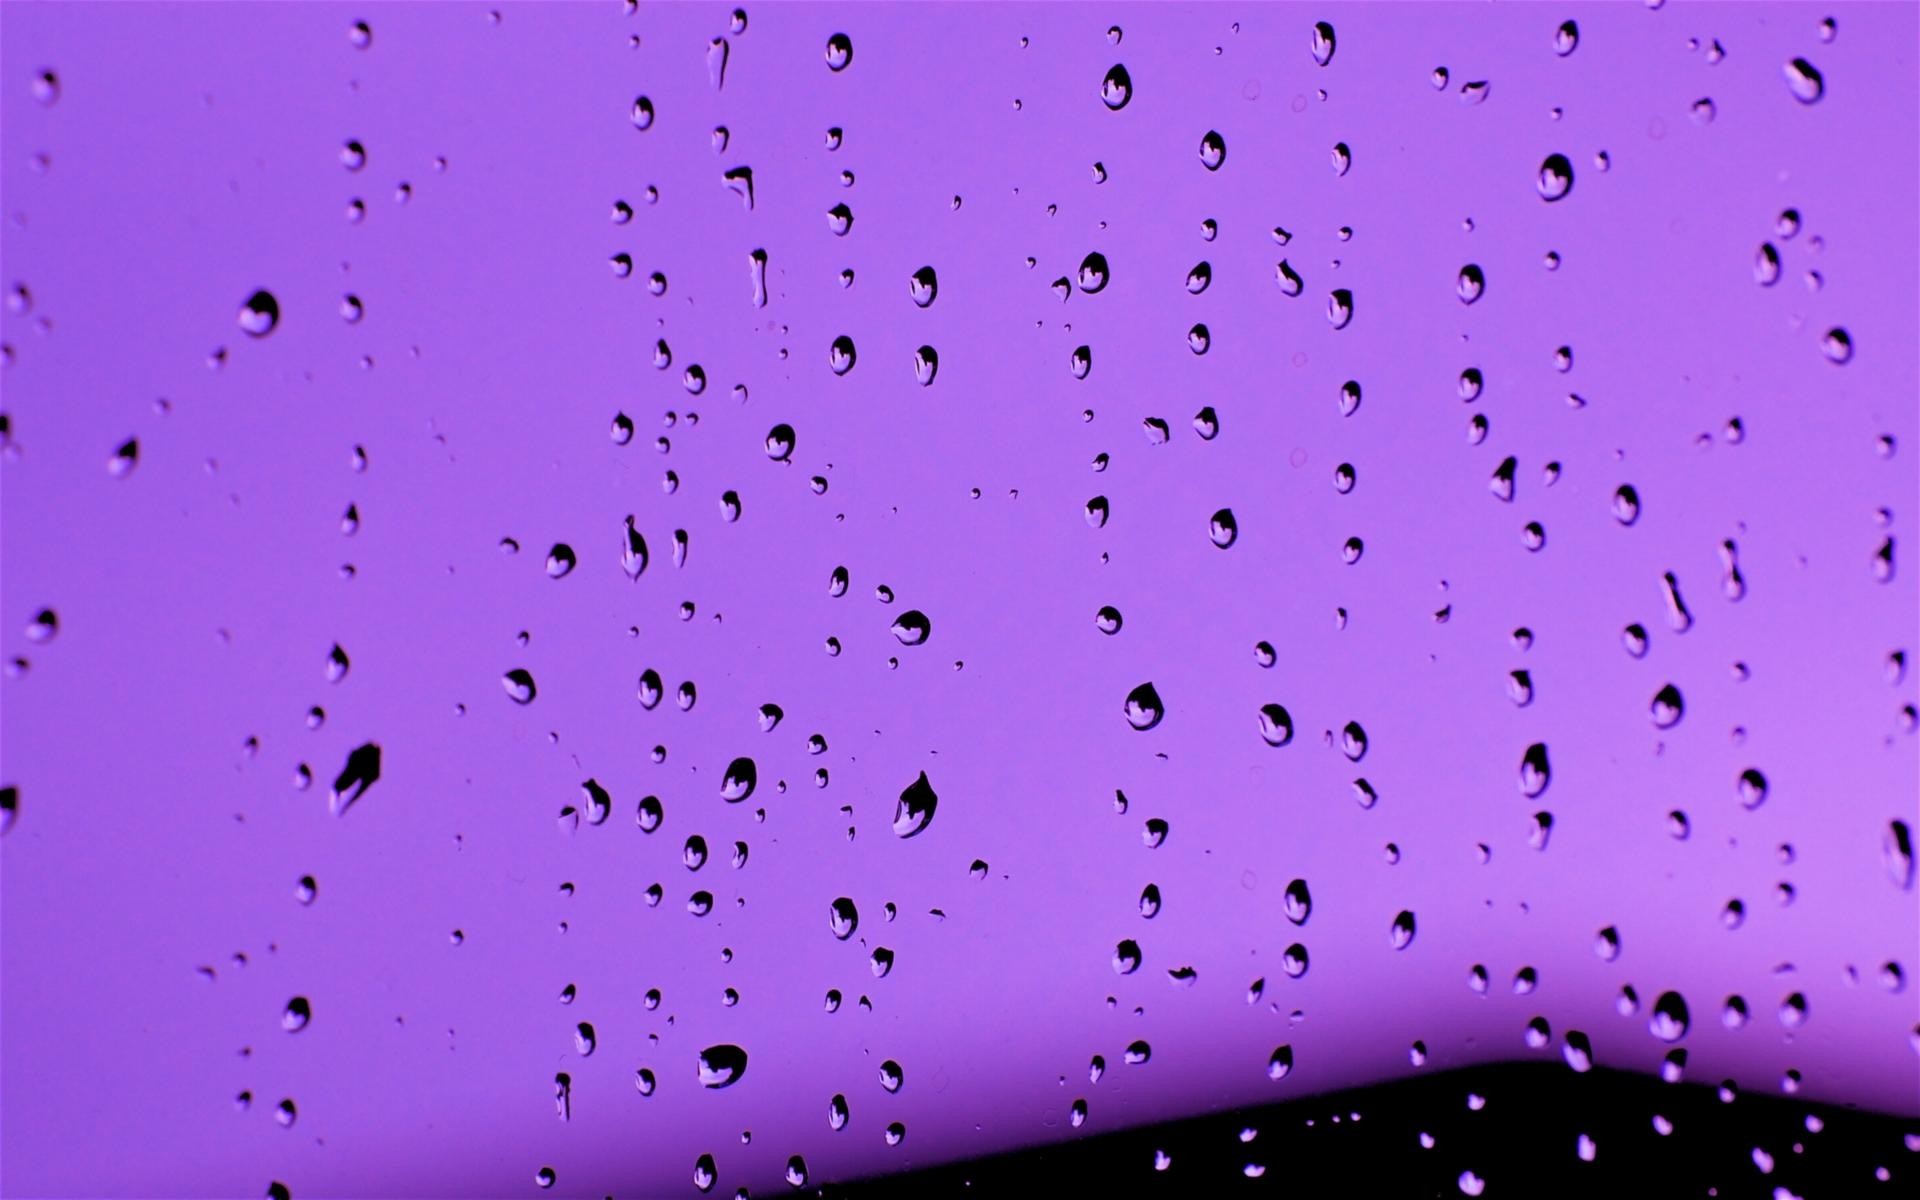 1920x1200 Purple Drops HD Image - Purple rain, purple rain!